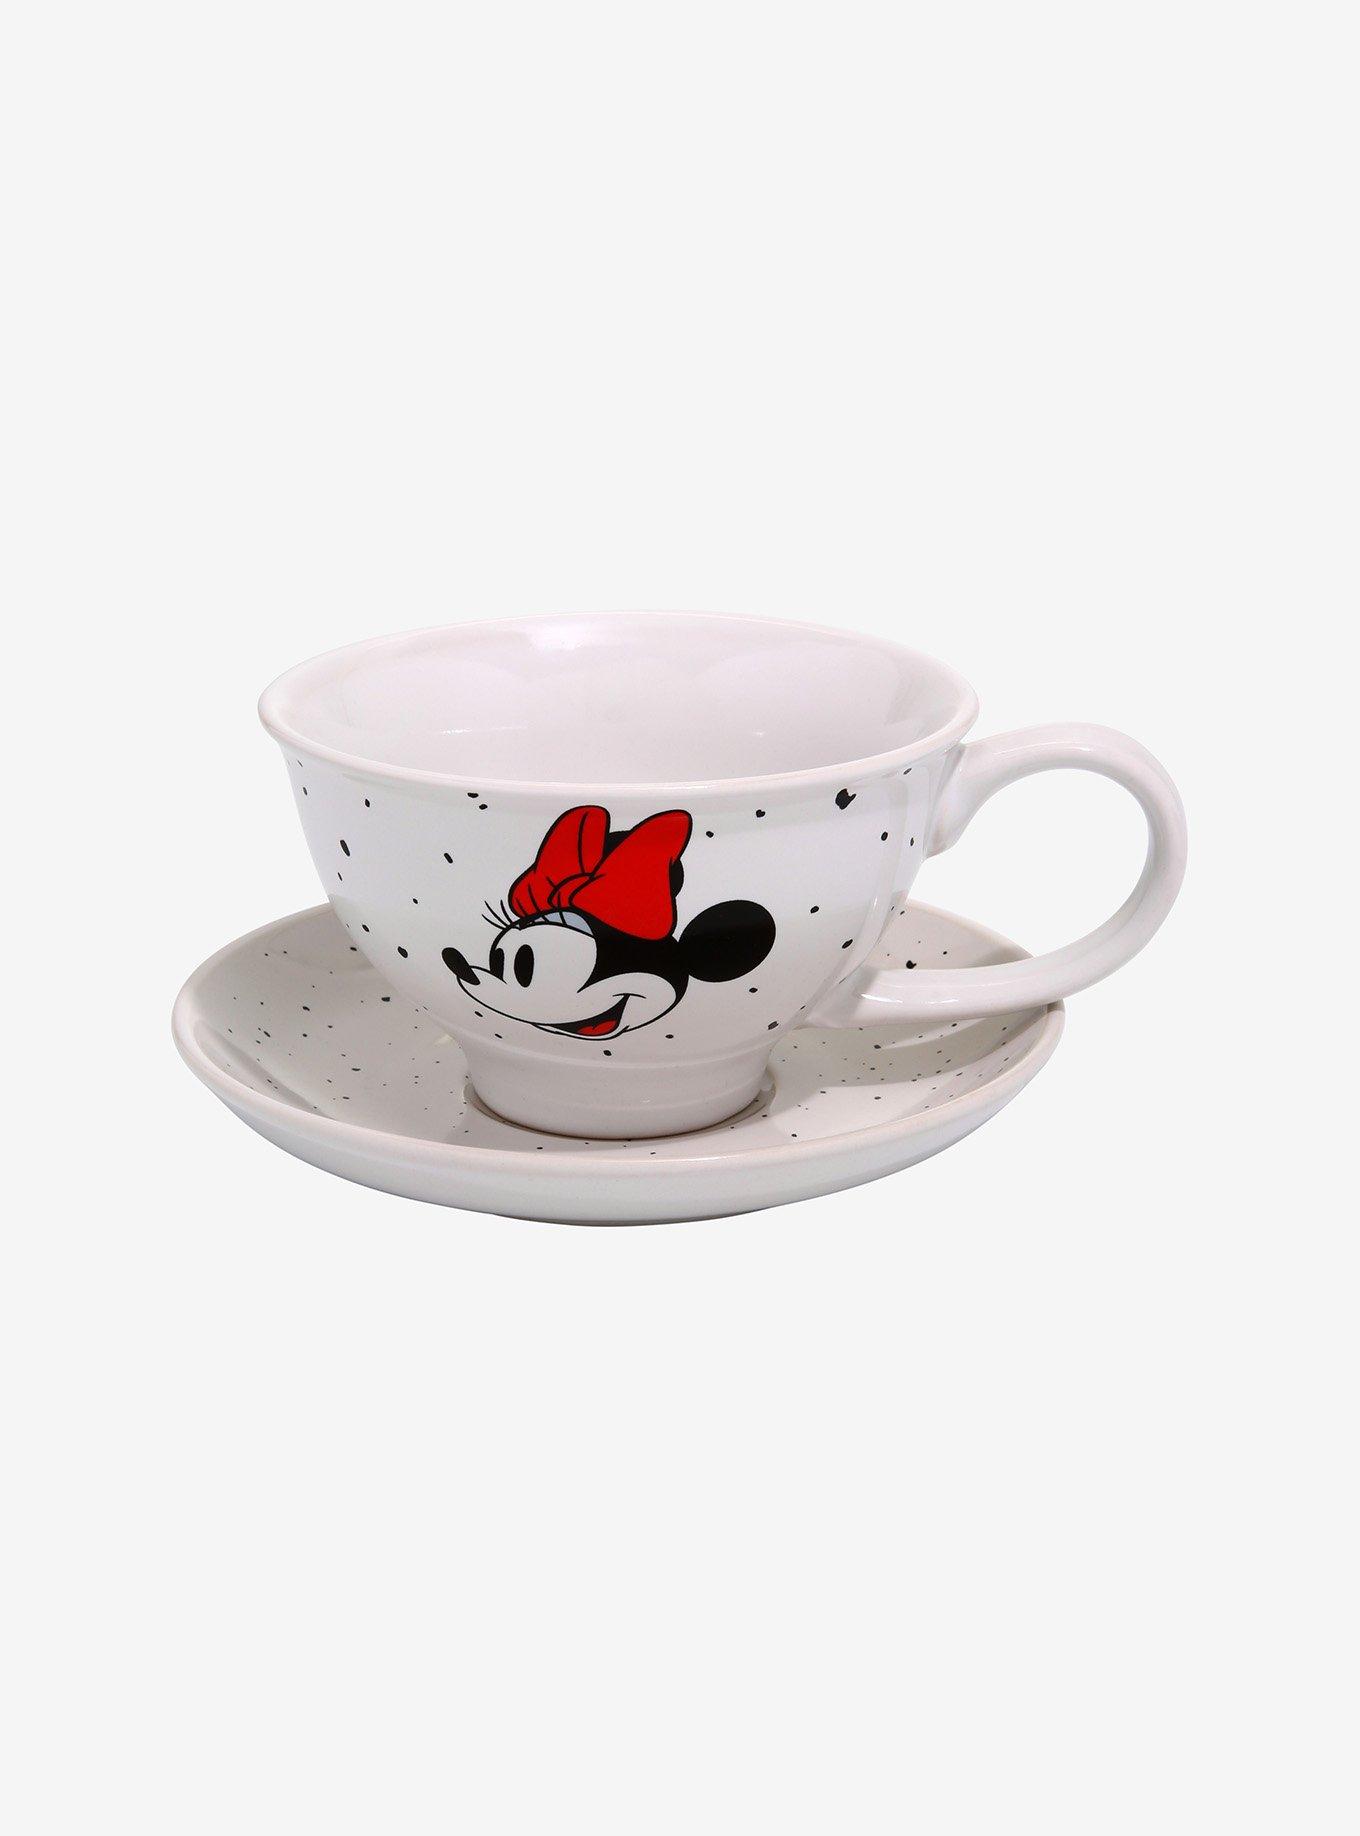 Disney Minnie Mouse Speckle Teacup & Saucer Set, , hi-res